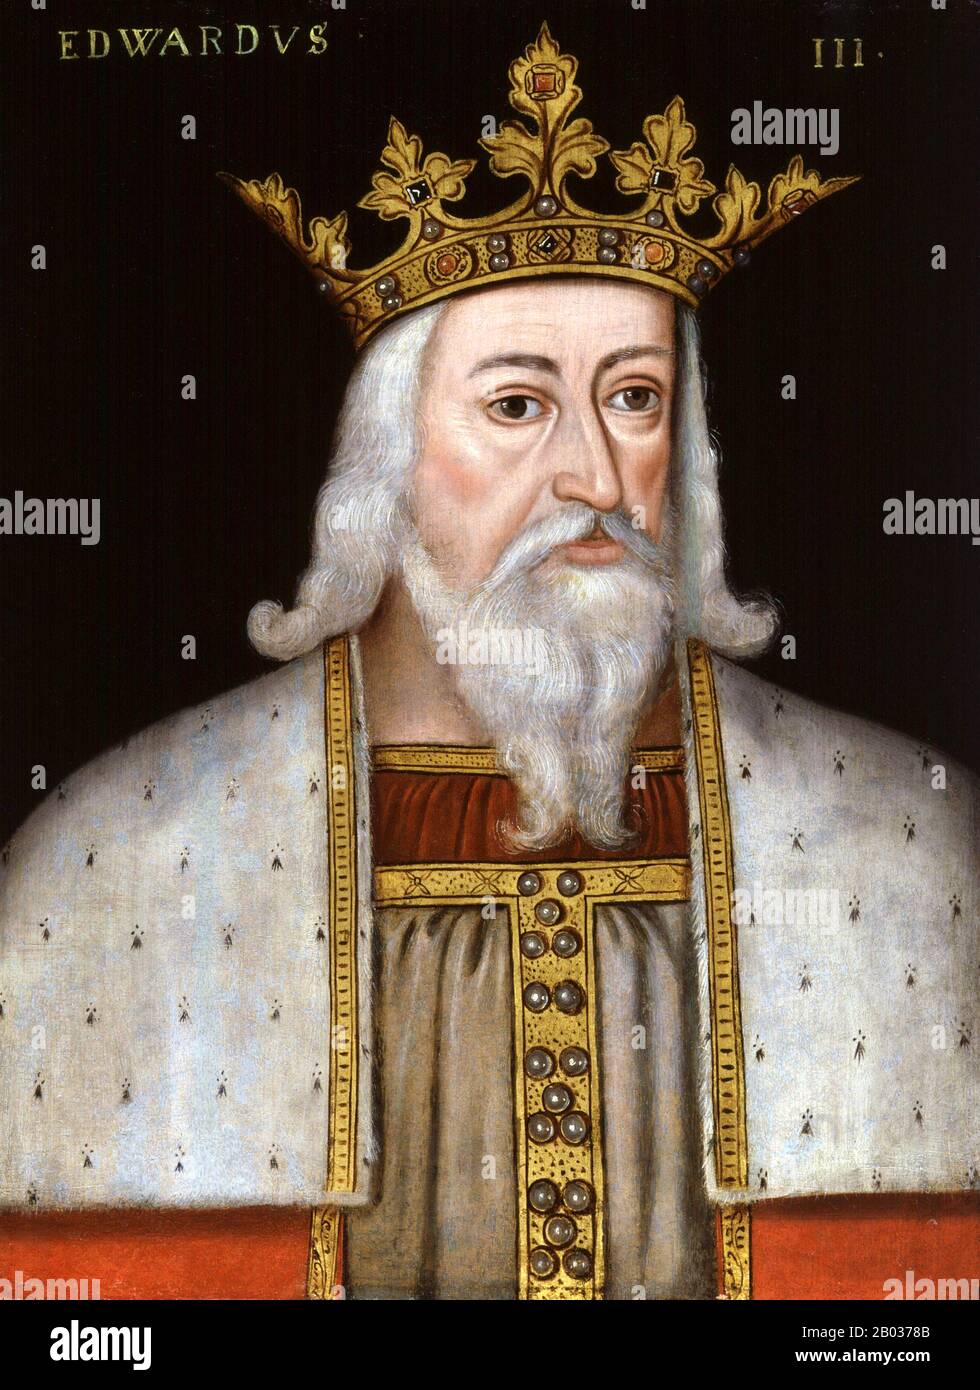 Edward III (13. November 1312 - 21. Juni 1377) war vom 25. Januar 1327 bis zu seinem Tod König von England; er ist für seinen militärischen Erfolg und für die Wiederherstellung der königlichen Autorität nach der desaströsen und unorthodoxen Herrschaft seines Vaters Edward II. Vermerkt Edward III. Verwandelte das Königreich England in eine der gewaltigsten Militärmächte Europas. Seine lange Regierungszeit von fünfzig Jahren war die zweitlängste im mittelalterlichen England und sah wichtige Entwicklungen in der Gesetzgebung und Regierung - insbesondere die Entwicklung des englischen parlaments - sowie die Verwüstung des Schwarzen Todes. Stockfoto